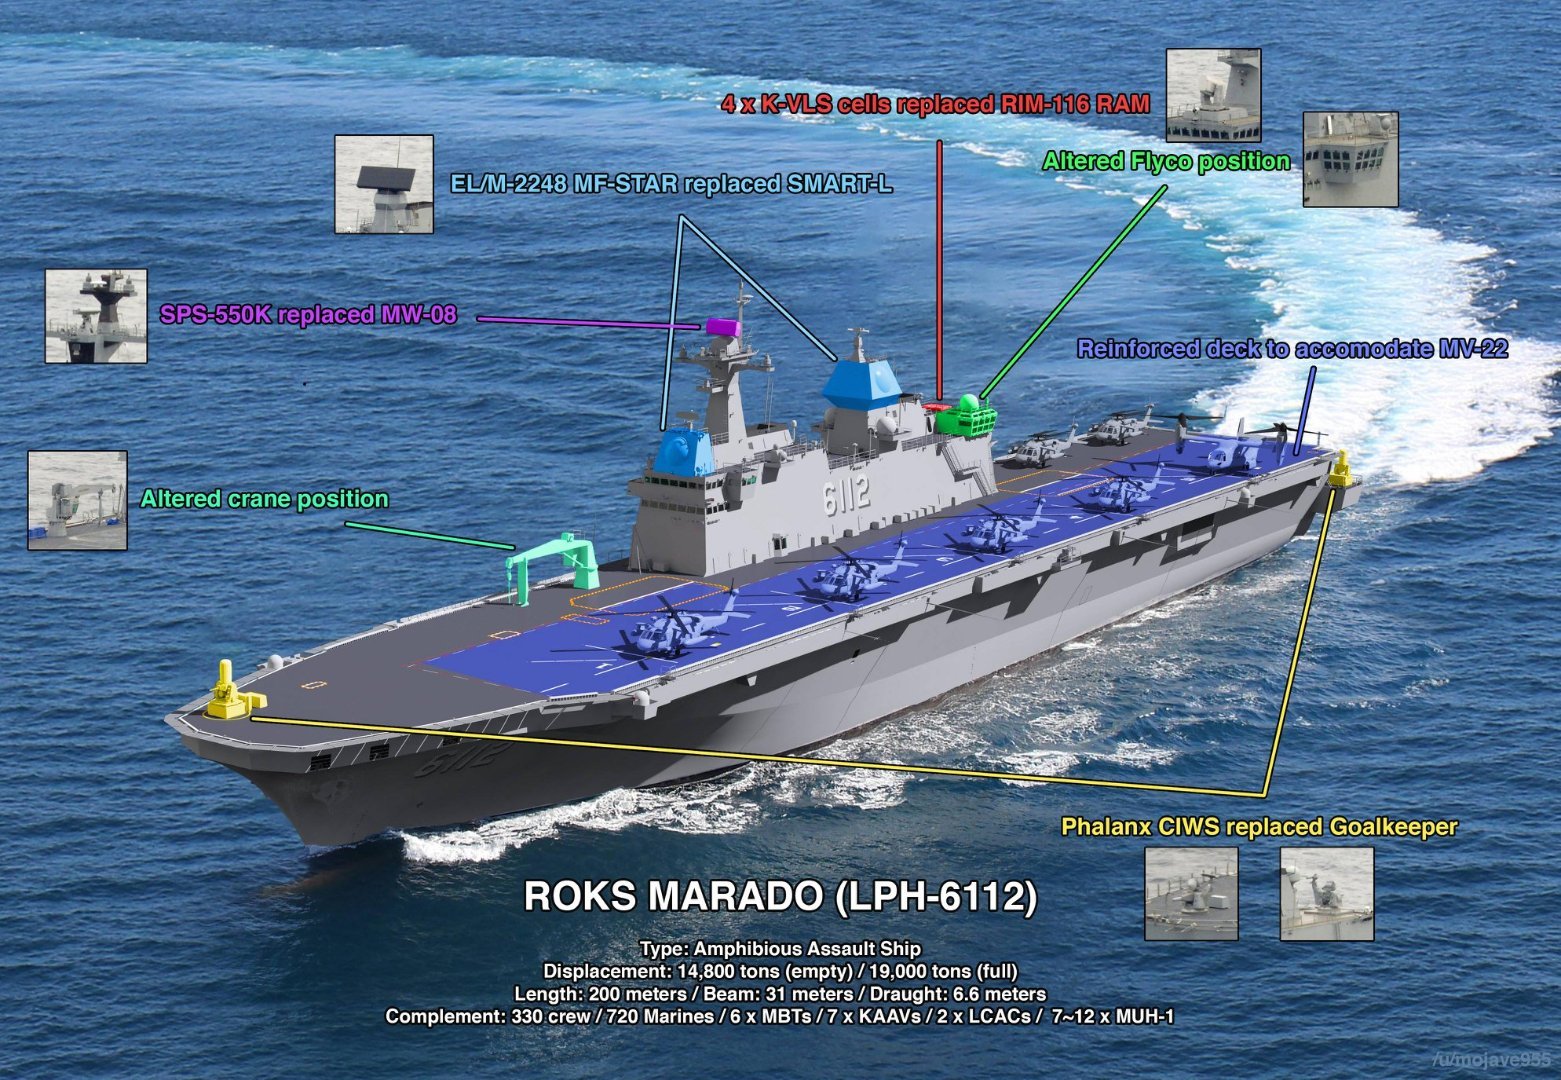 东亚小航母三足鼎立—韩国海军下一代LPX-Ⅱ两栖攻击舰亮相防务展